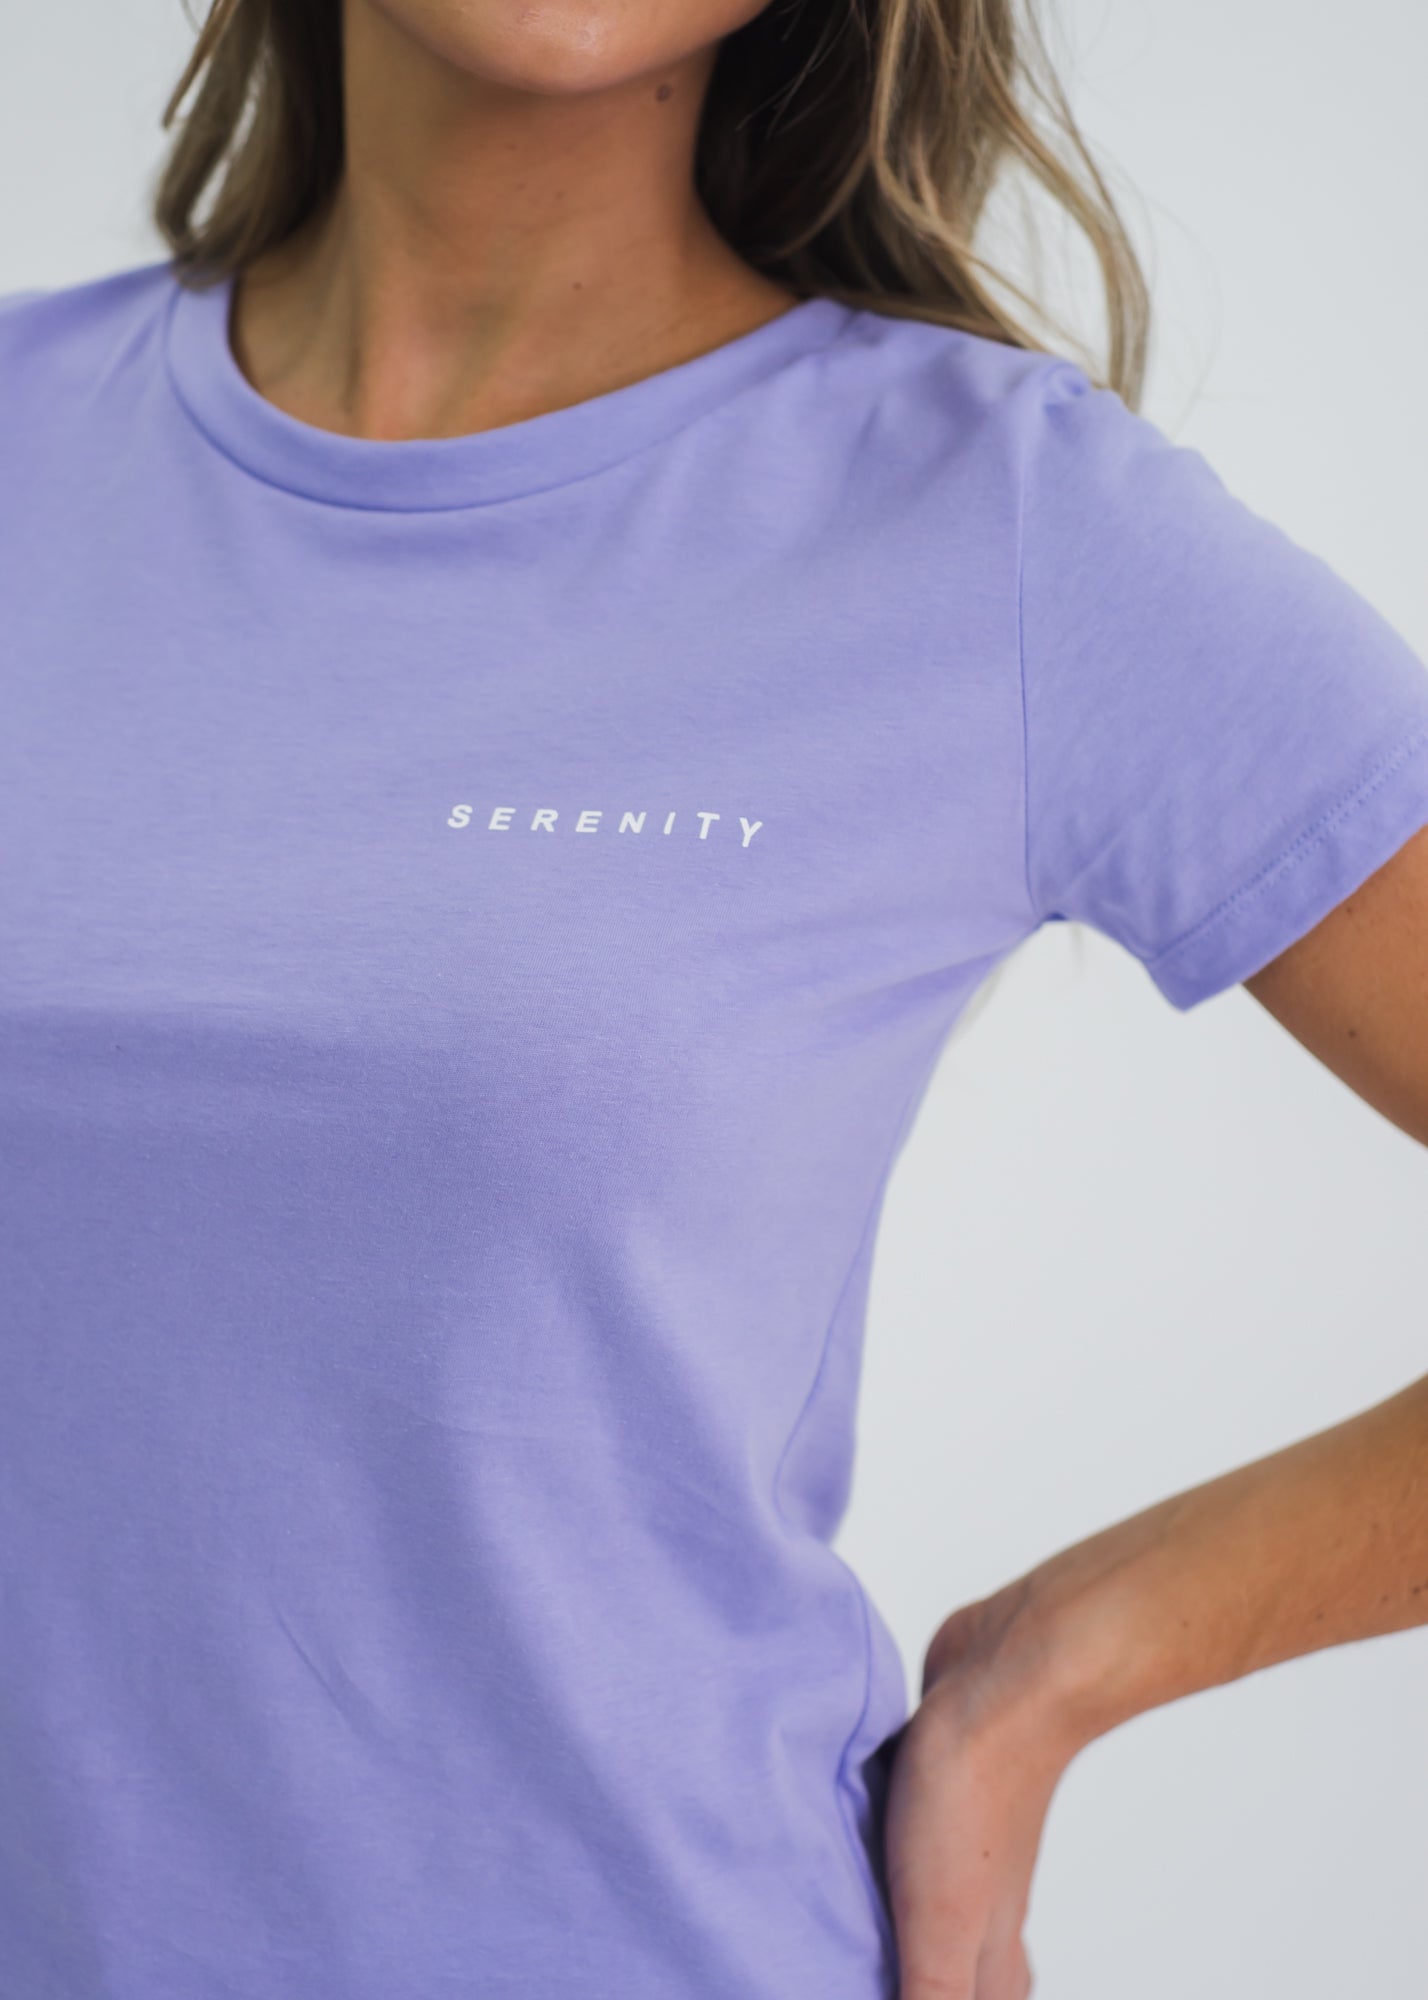 Camiseta Serenity - Lilás